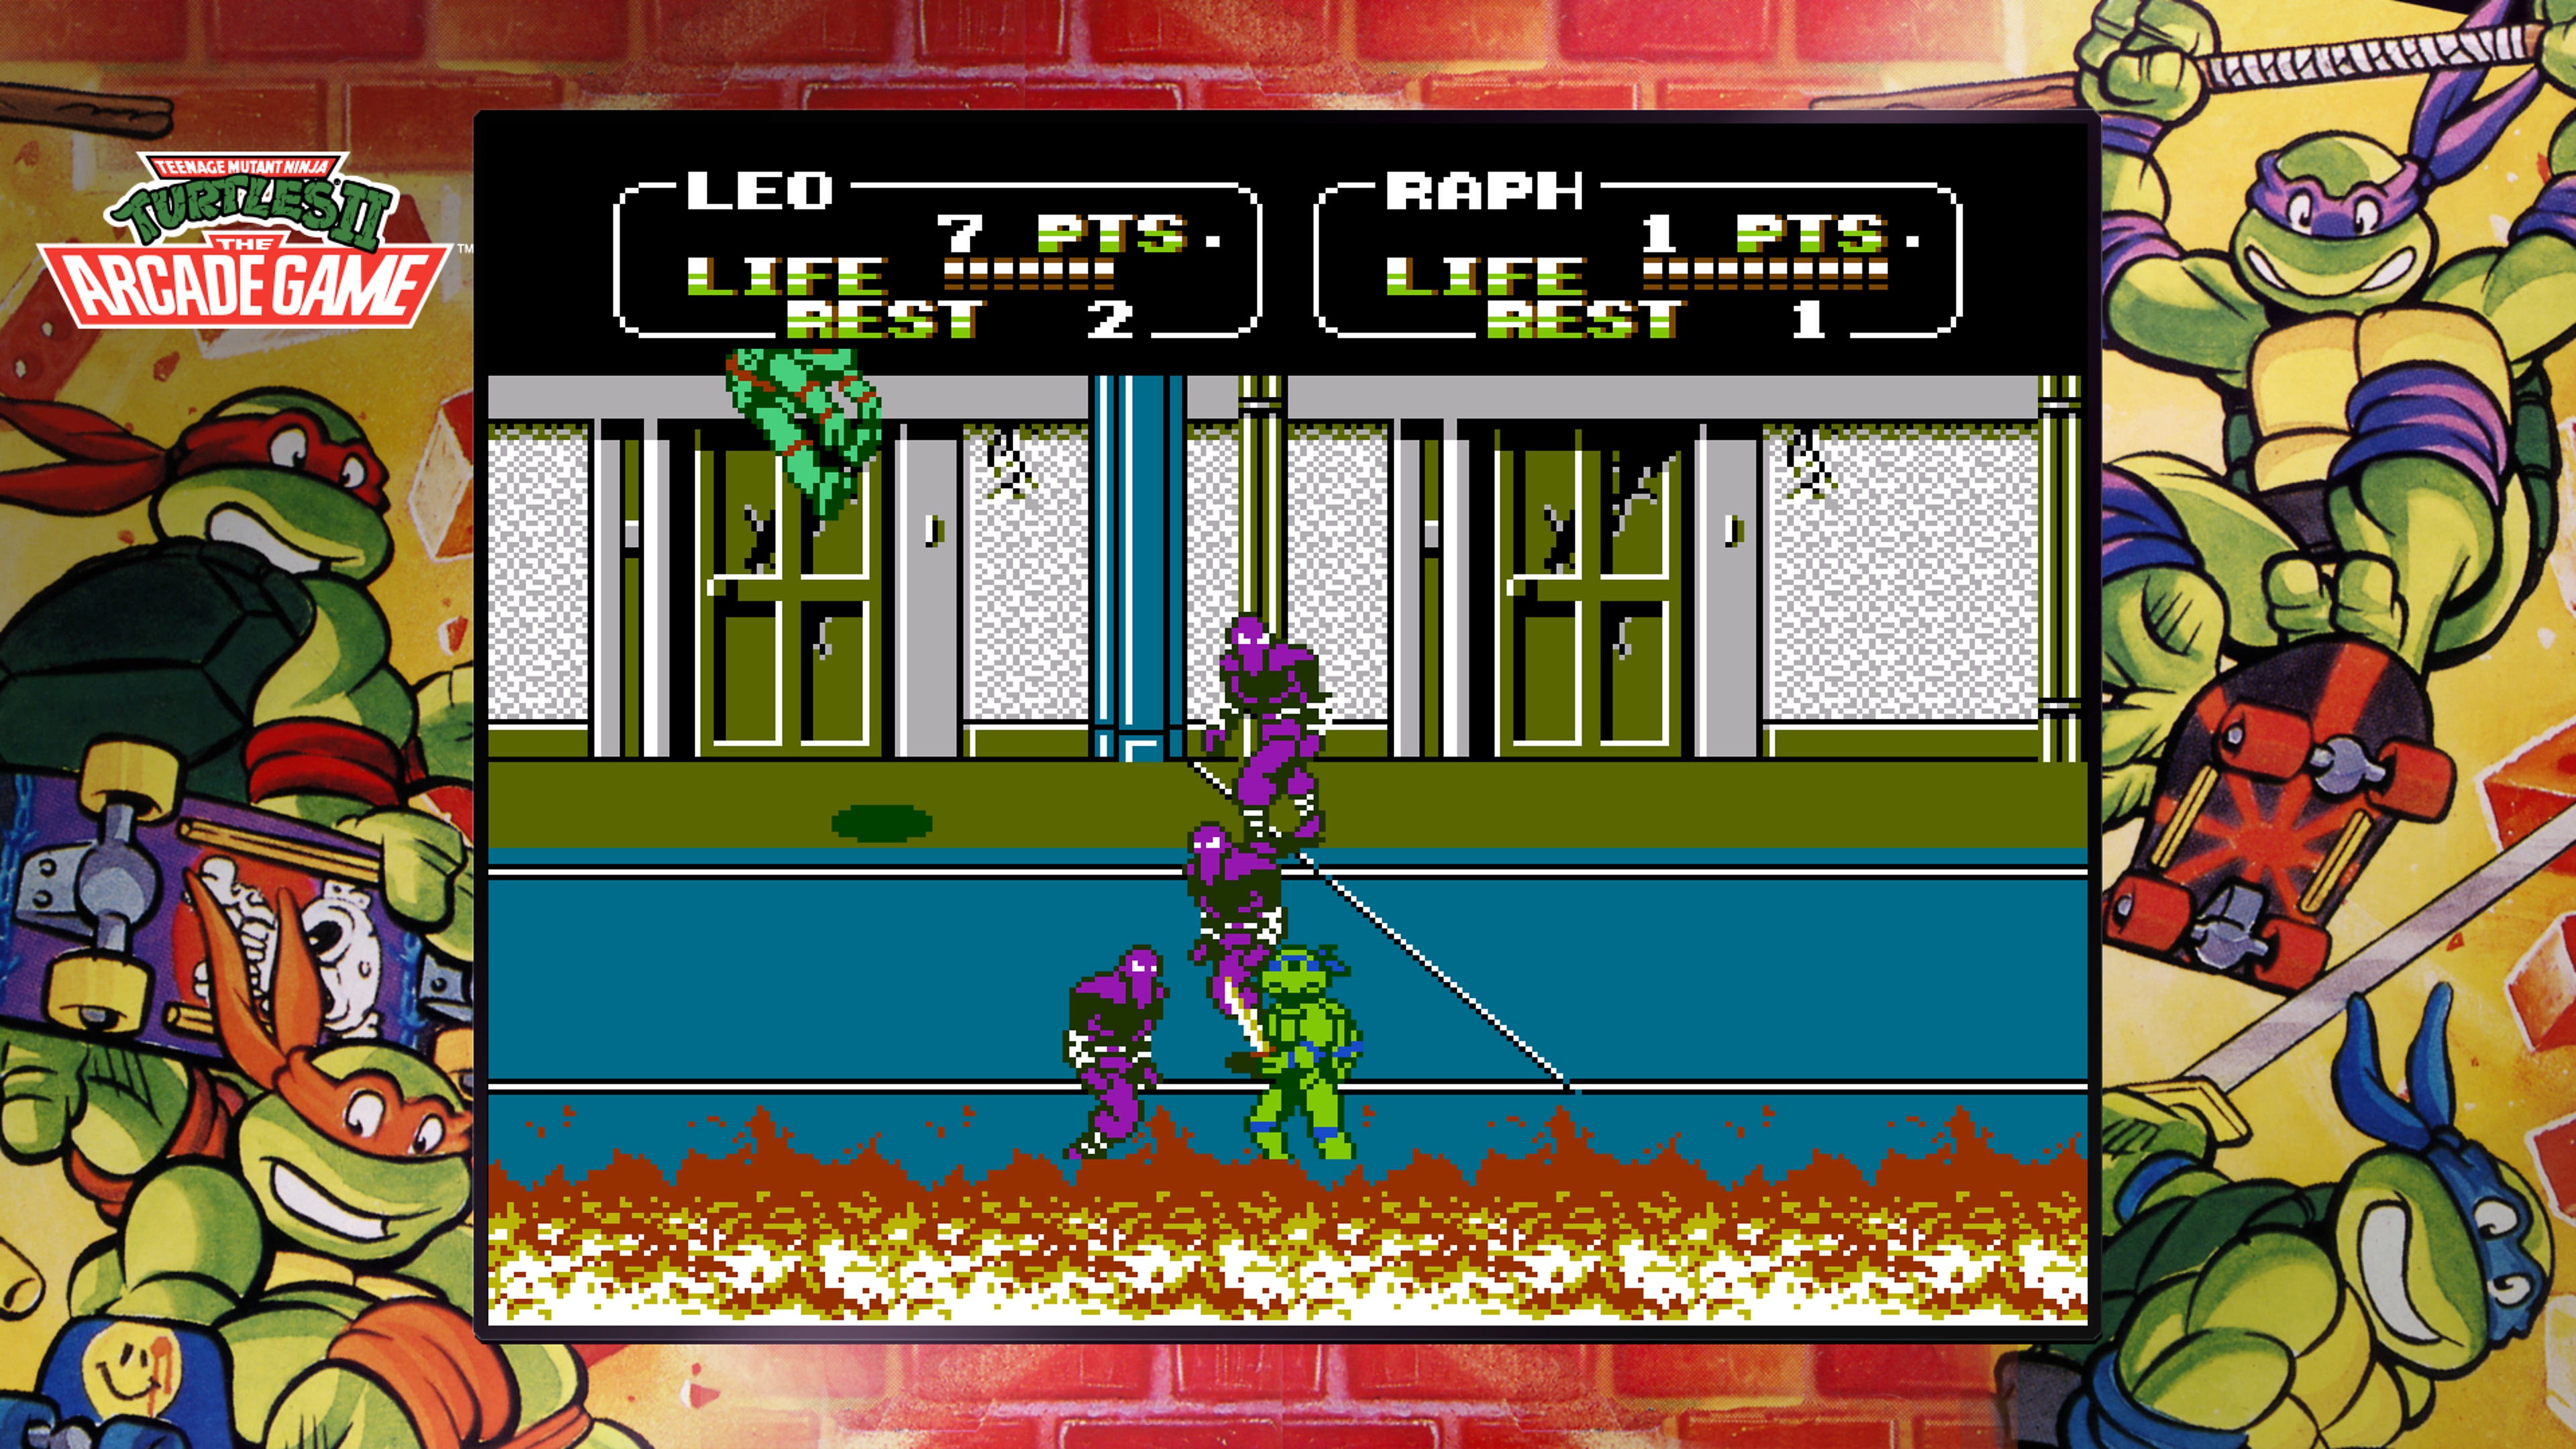 Teenage Mutant Ninja Turtles Collection - The Arcade Game -kuvakaappaus: Leonardo taistelee Jalkaklaania vastaan